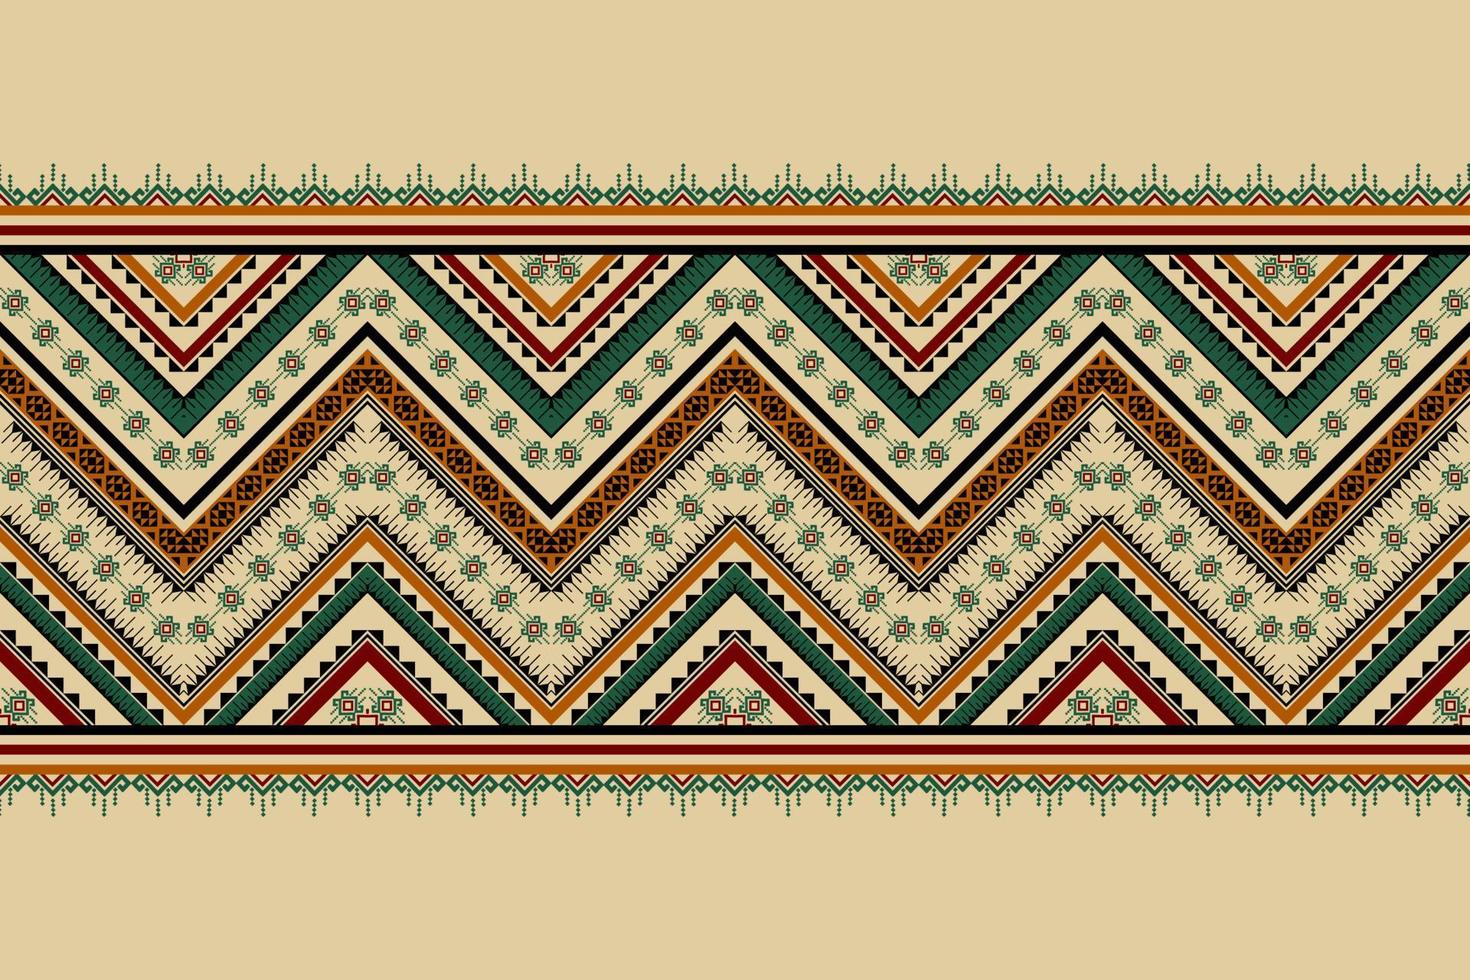 padrão étnico indiano tradicional. padrão geométrico em tribal. decoração de borda. design para plano de fundo, papel de parede, ilustração vetorial, têxtil, tecido, vestuário, batik, tapete, bordado. vetor